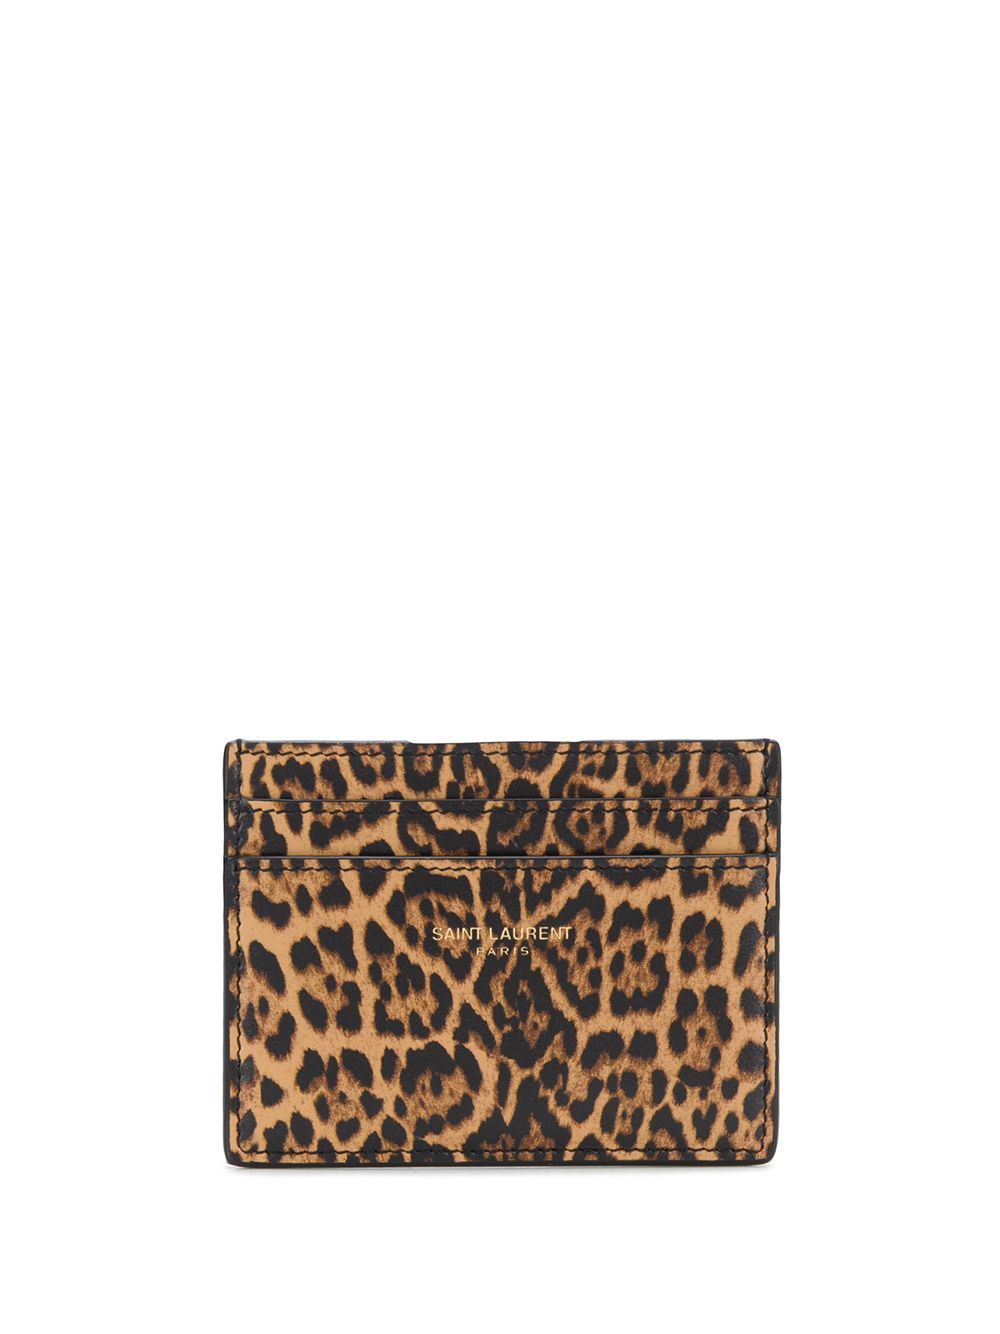 Saint Laurent leopard-print Cardholder - Farfetch